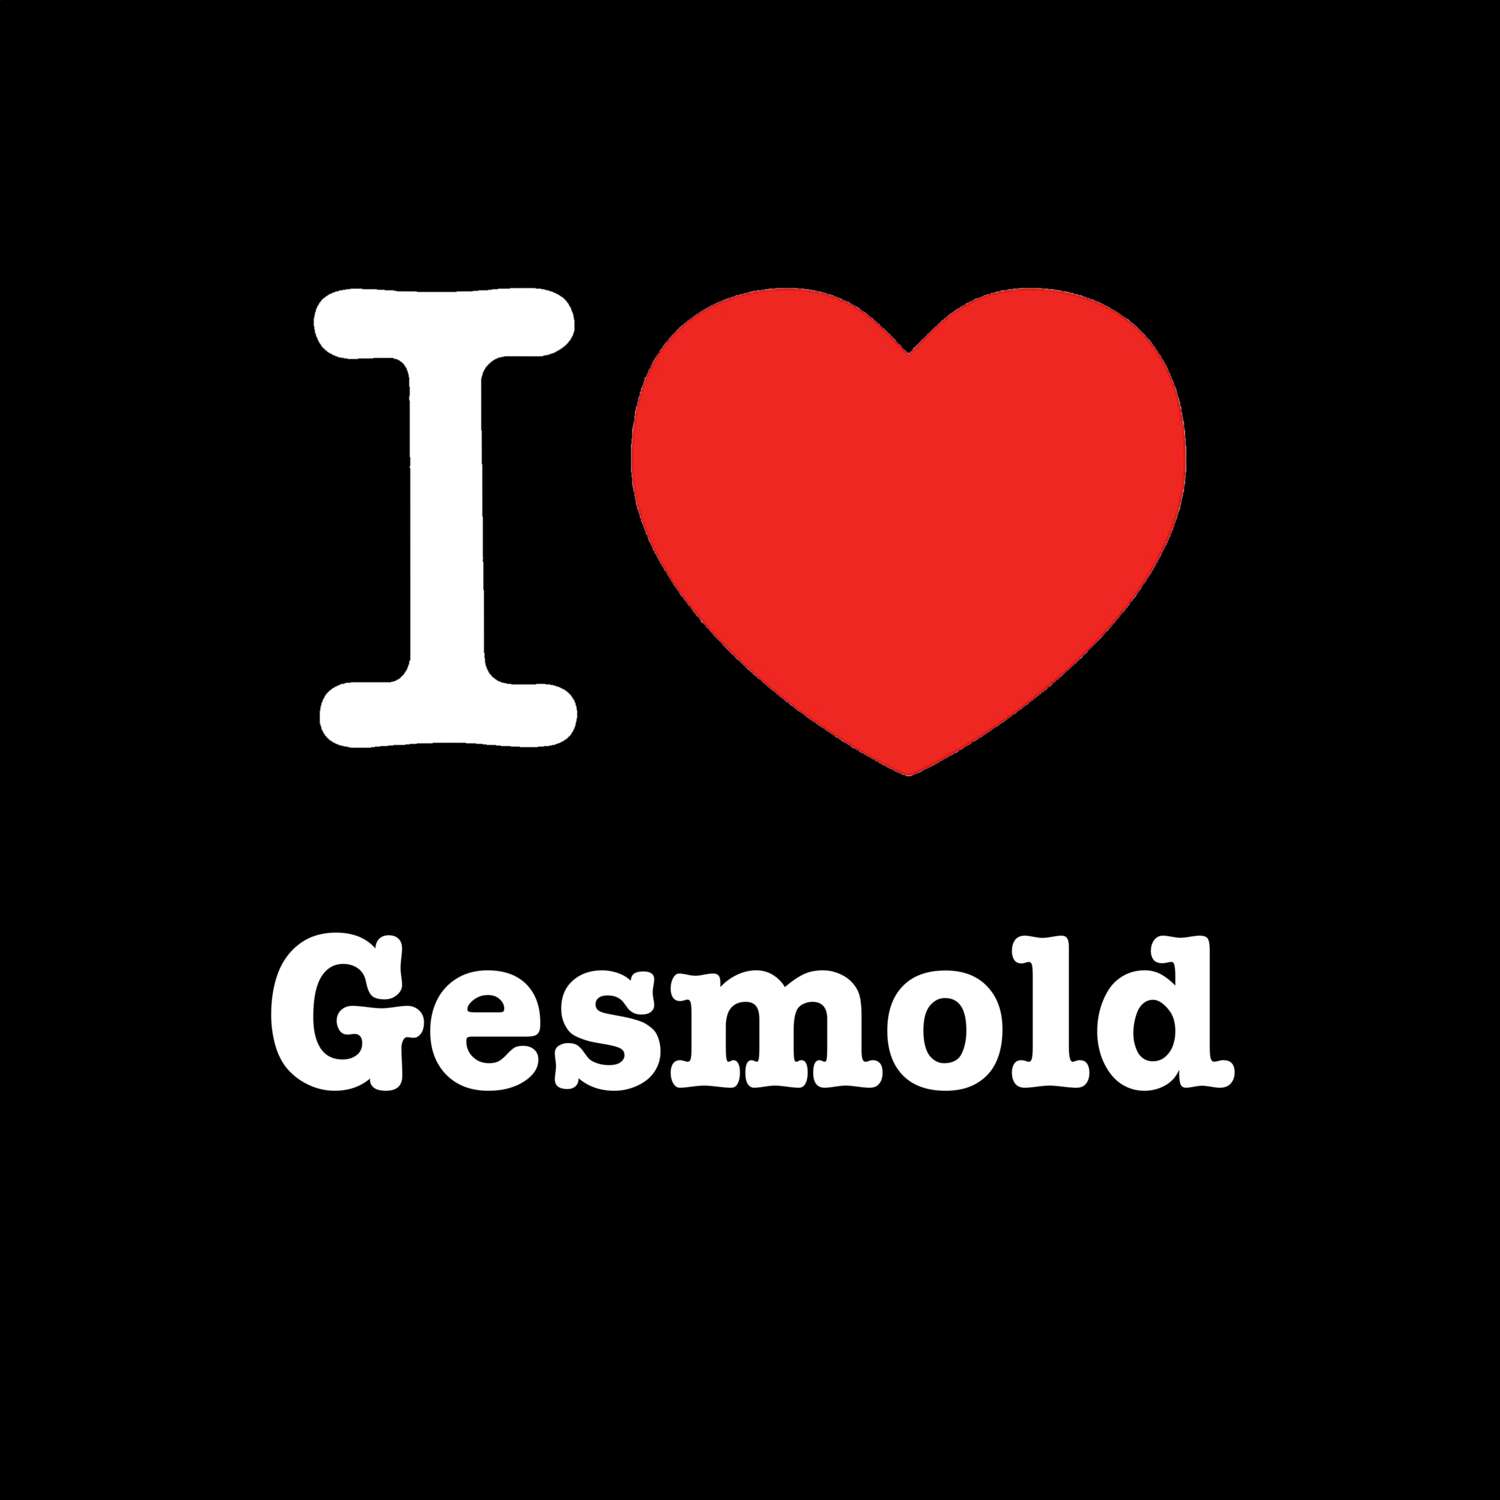 Gesmold T-Shirt »I love«